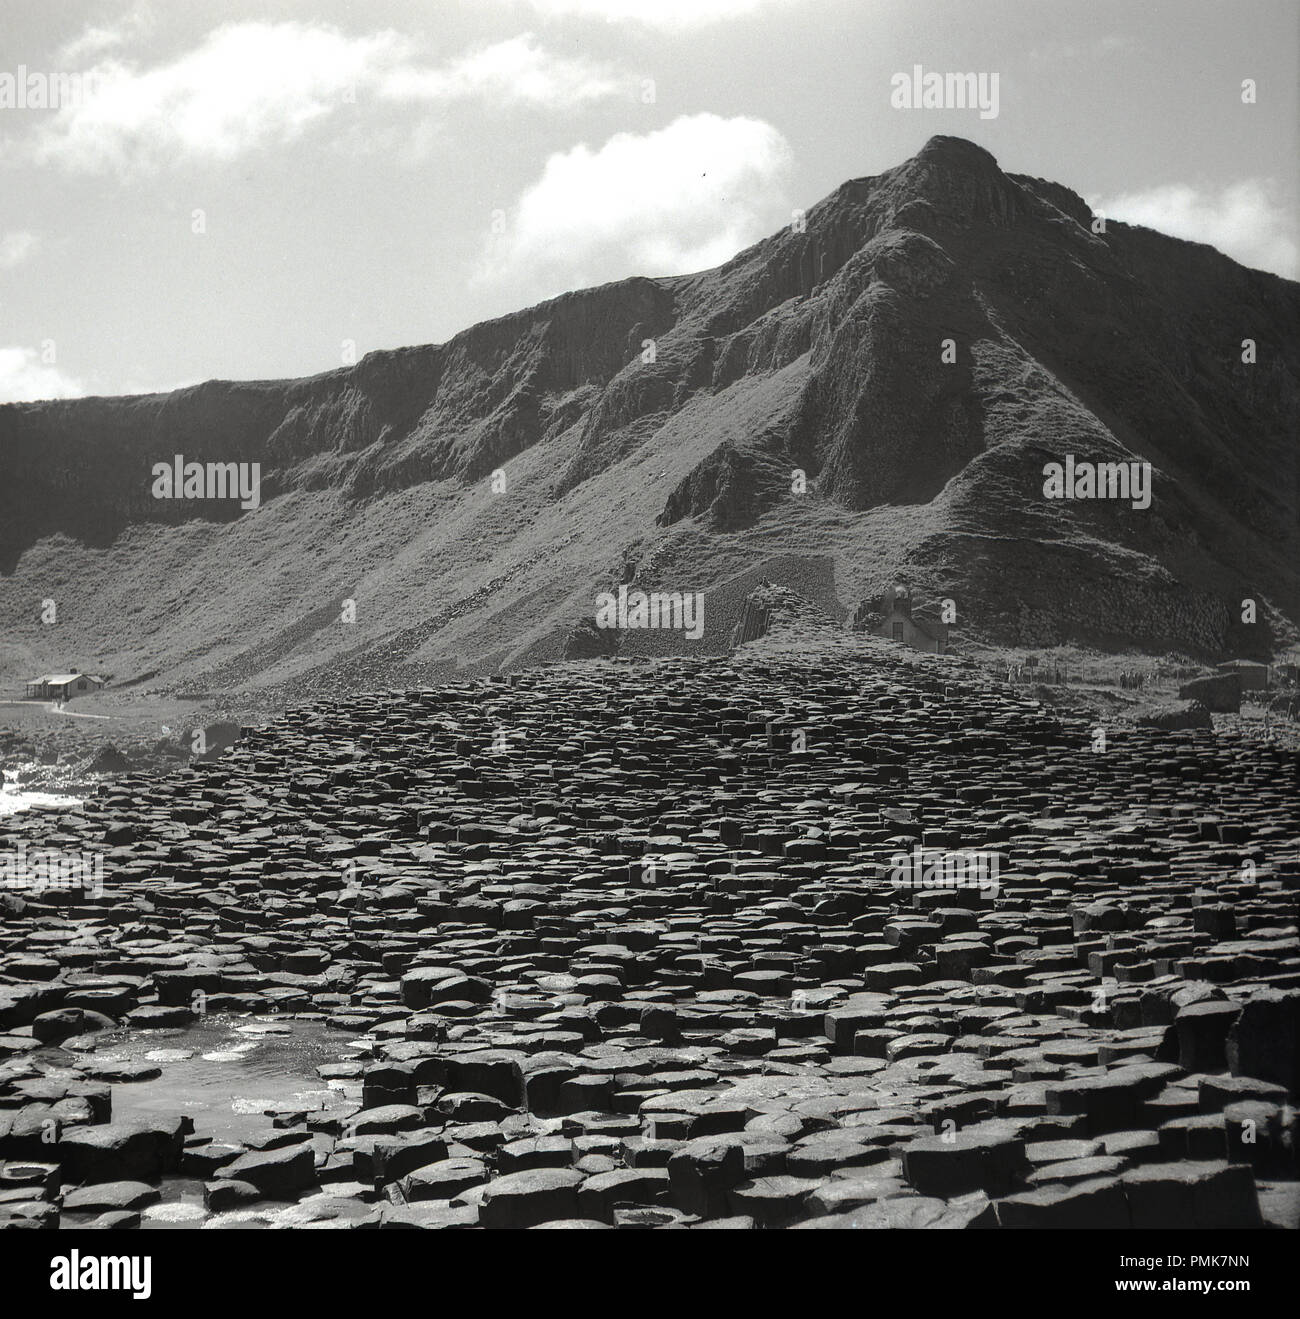 Années 1950, historique, une vue de l'anicent rock formations, les colonnes basaltiques hexagonales et la des falaises à la Chaussée des Géants, Co Antrim, en Irlande du Nord, Royaume-Uni. Banque D'Images